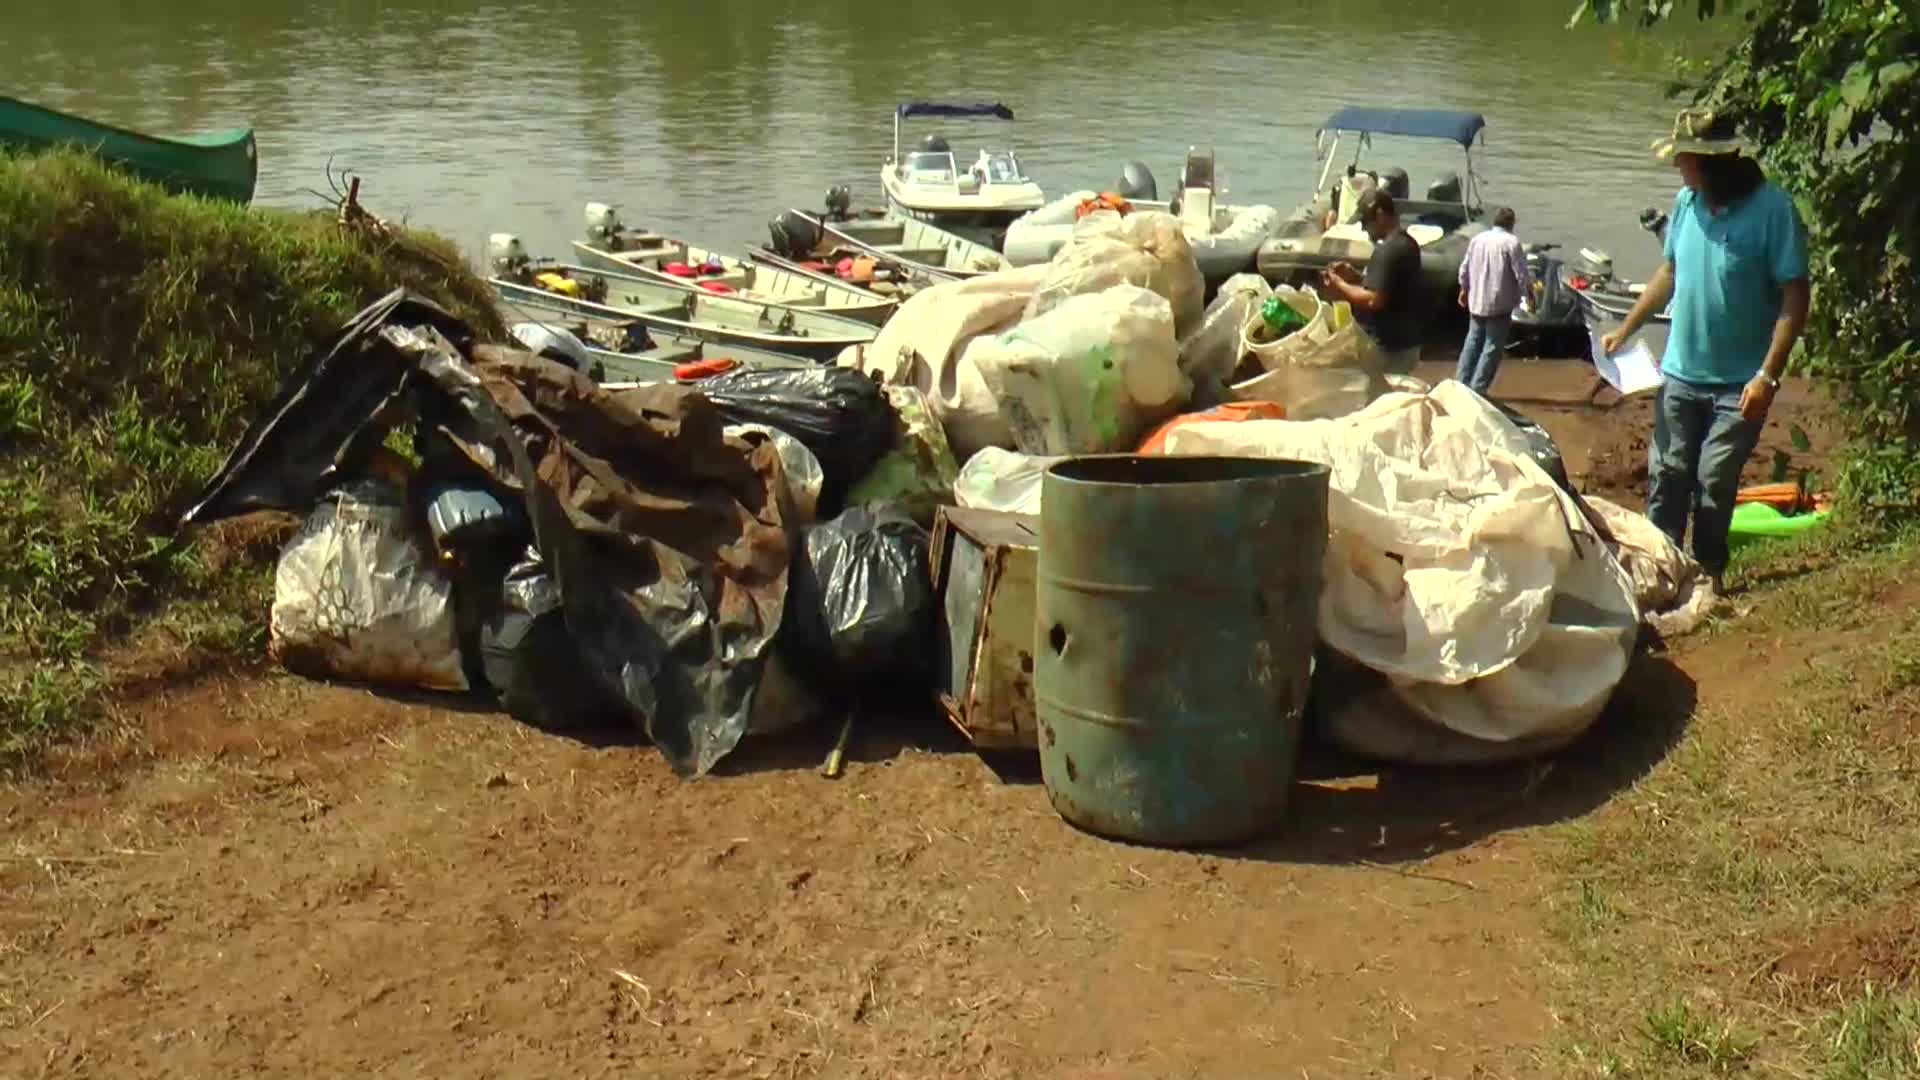 Limpieza del rio uruguay: retiraron 5 toneladas de residuos